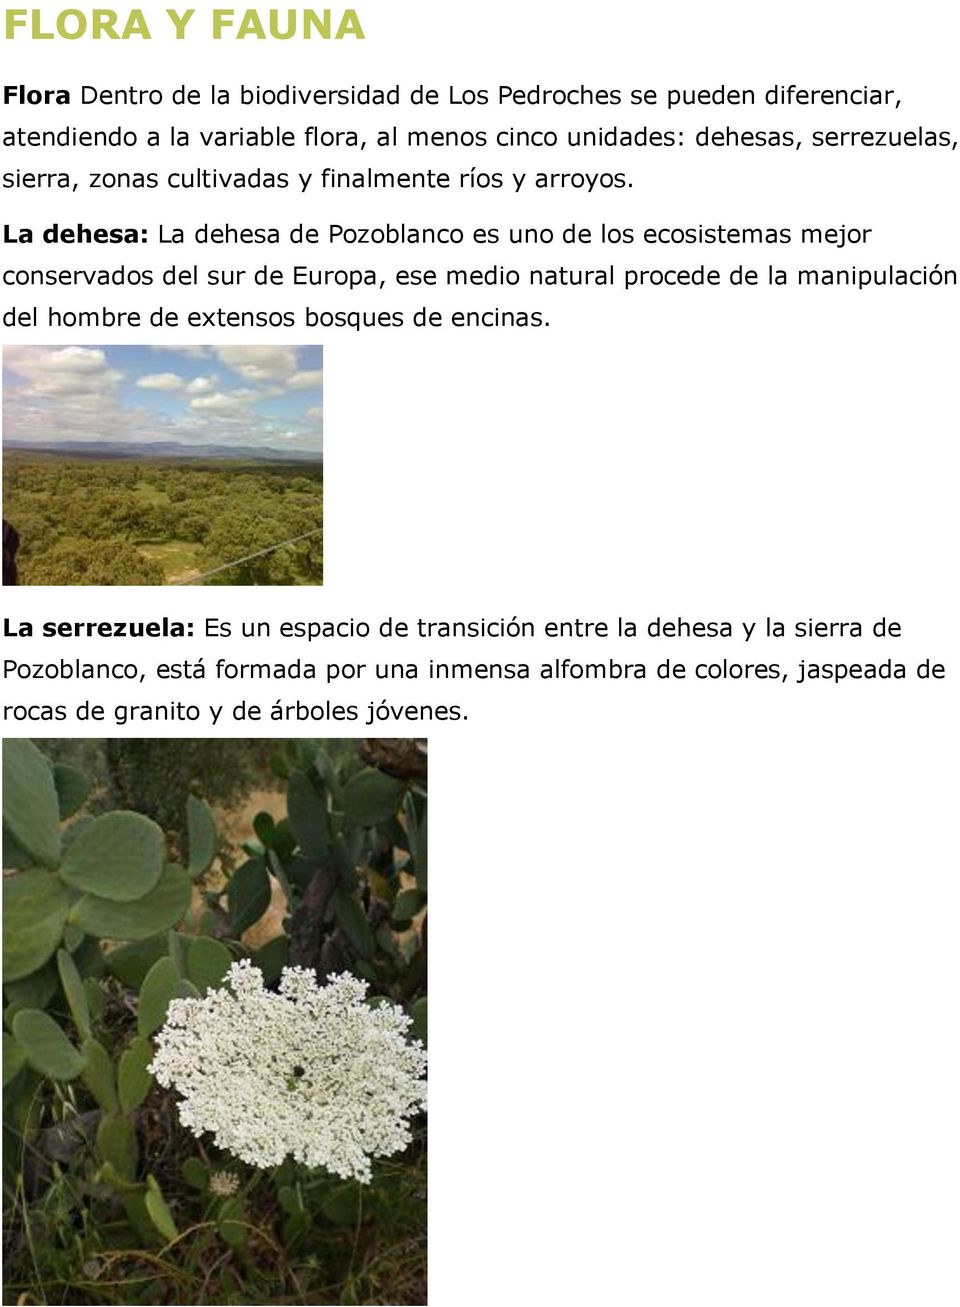 La dehesa: La dehesa de Pozoblanco es uno de los ecosistemas mejor conservados del sur de Europa, ese medio natural procede de la manipulación del